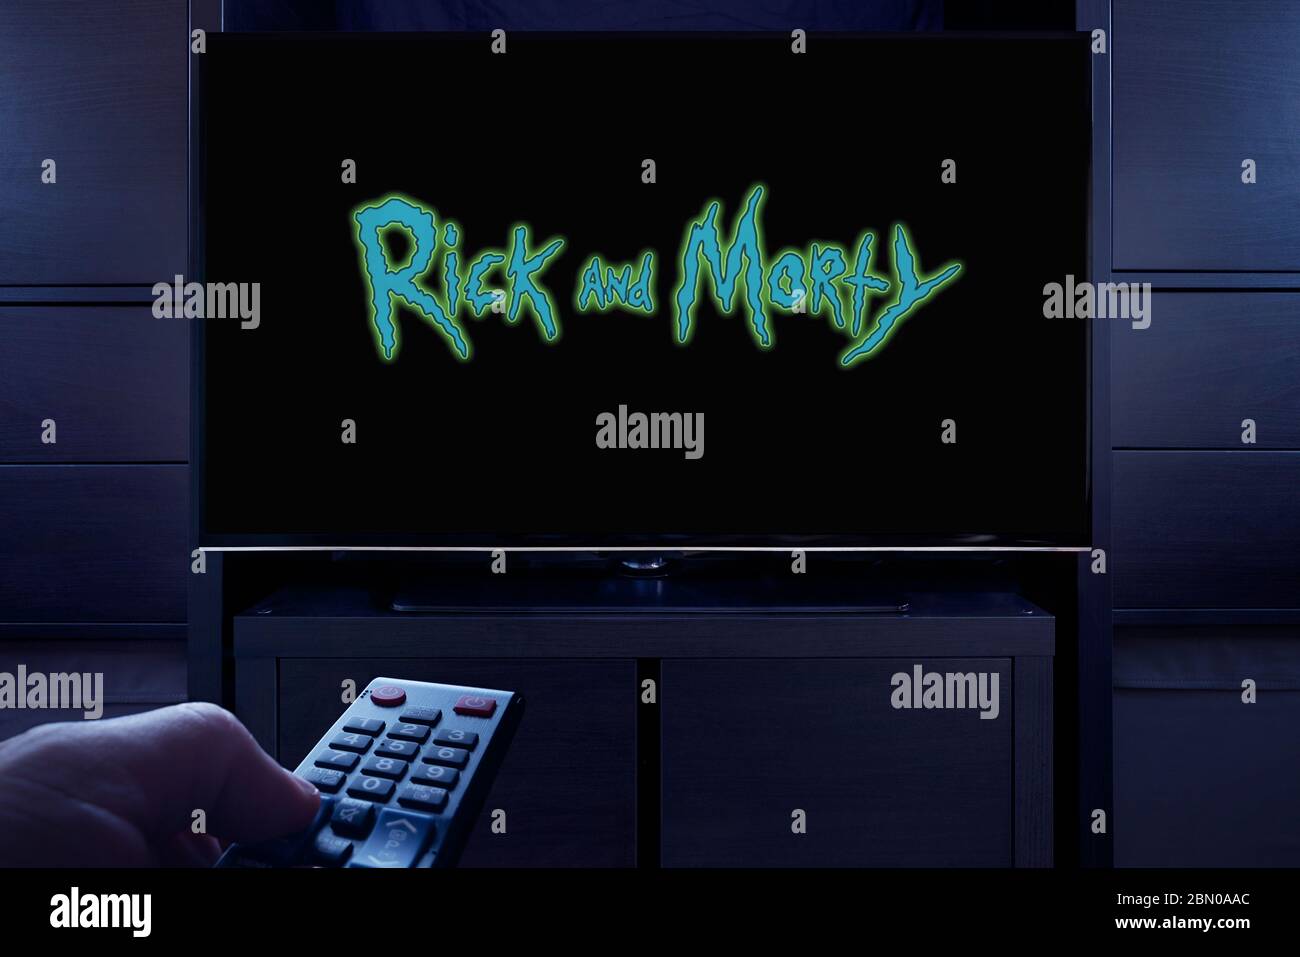 Un homme pointe une télécommande de télévision sur le téléviseur qui affiche l'écran principal de titre de Rick et Morty (usage éditorial uniquement). Banque D'Images